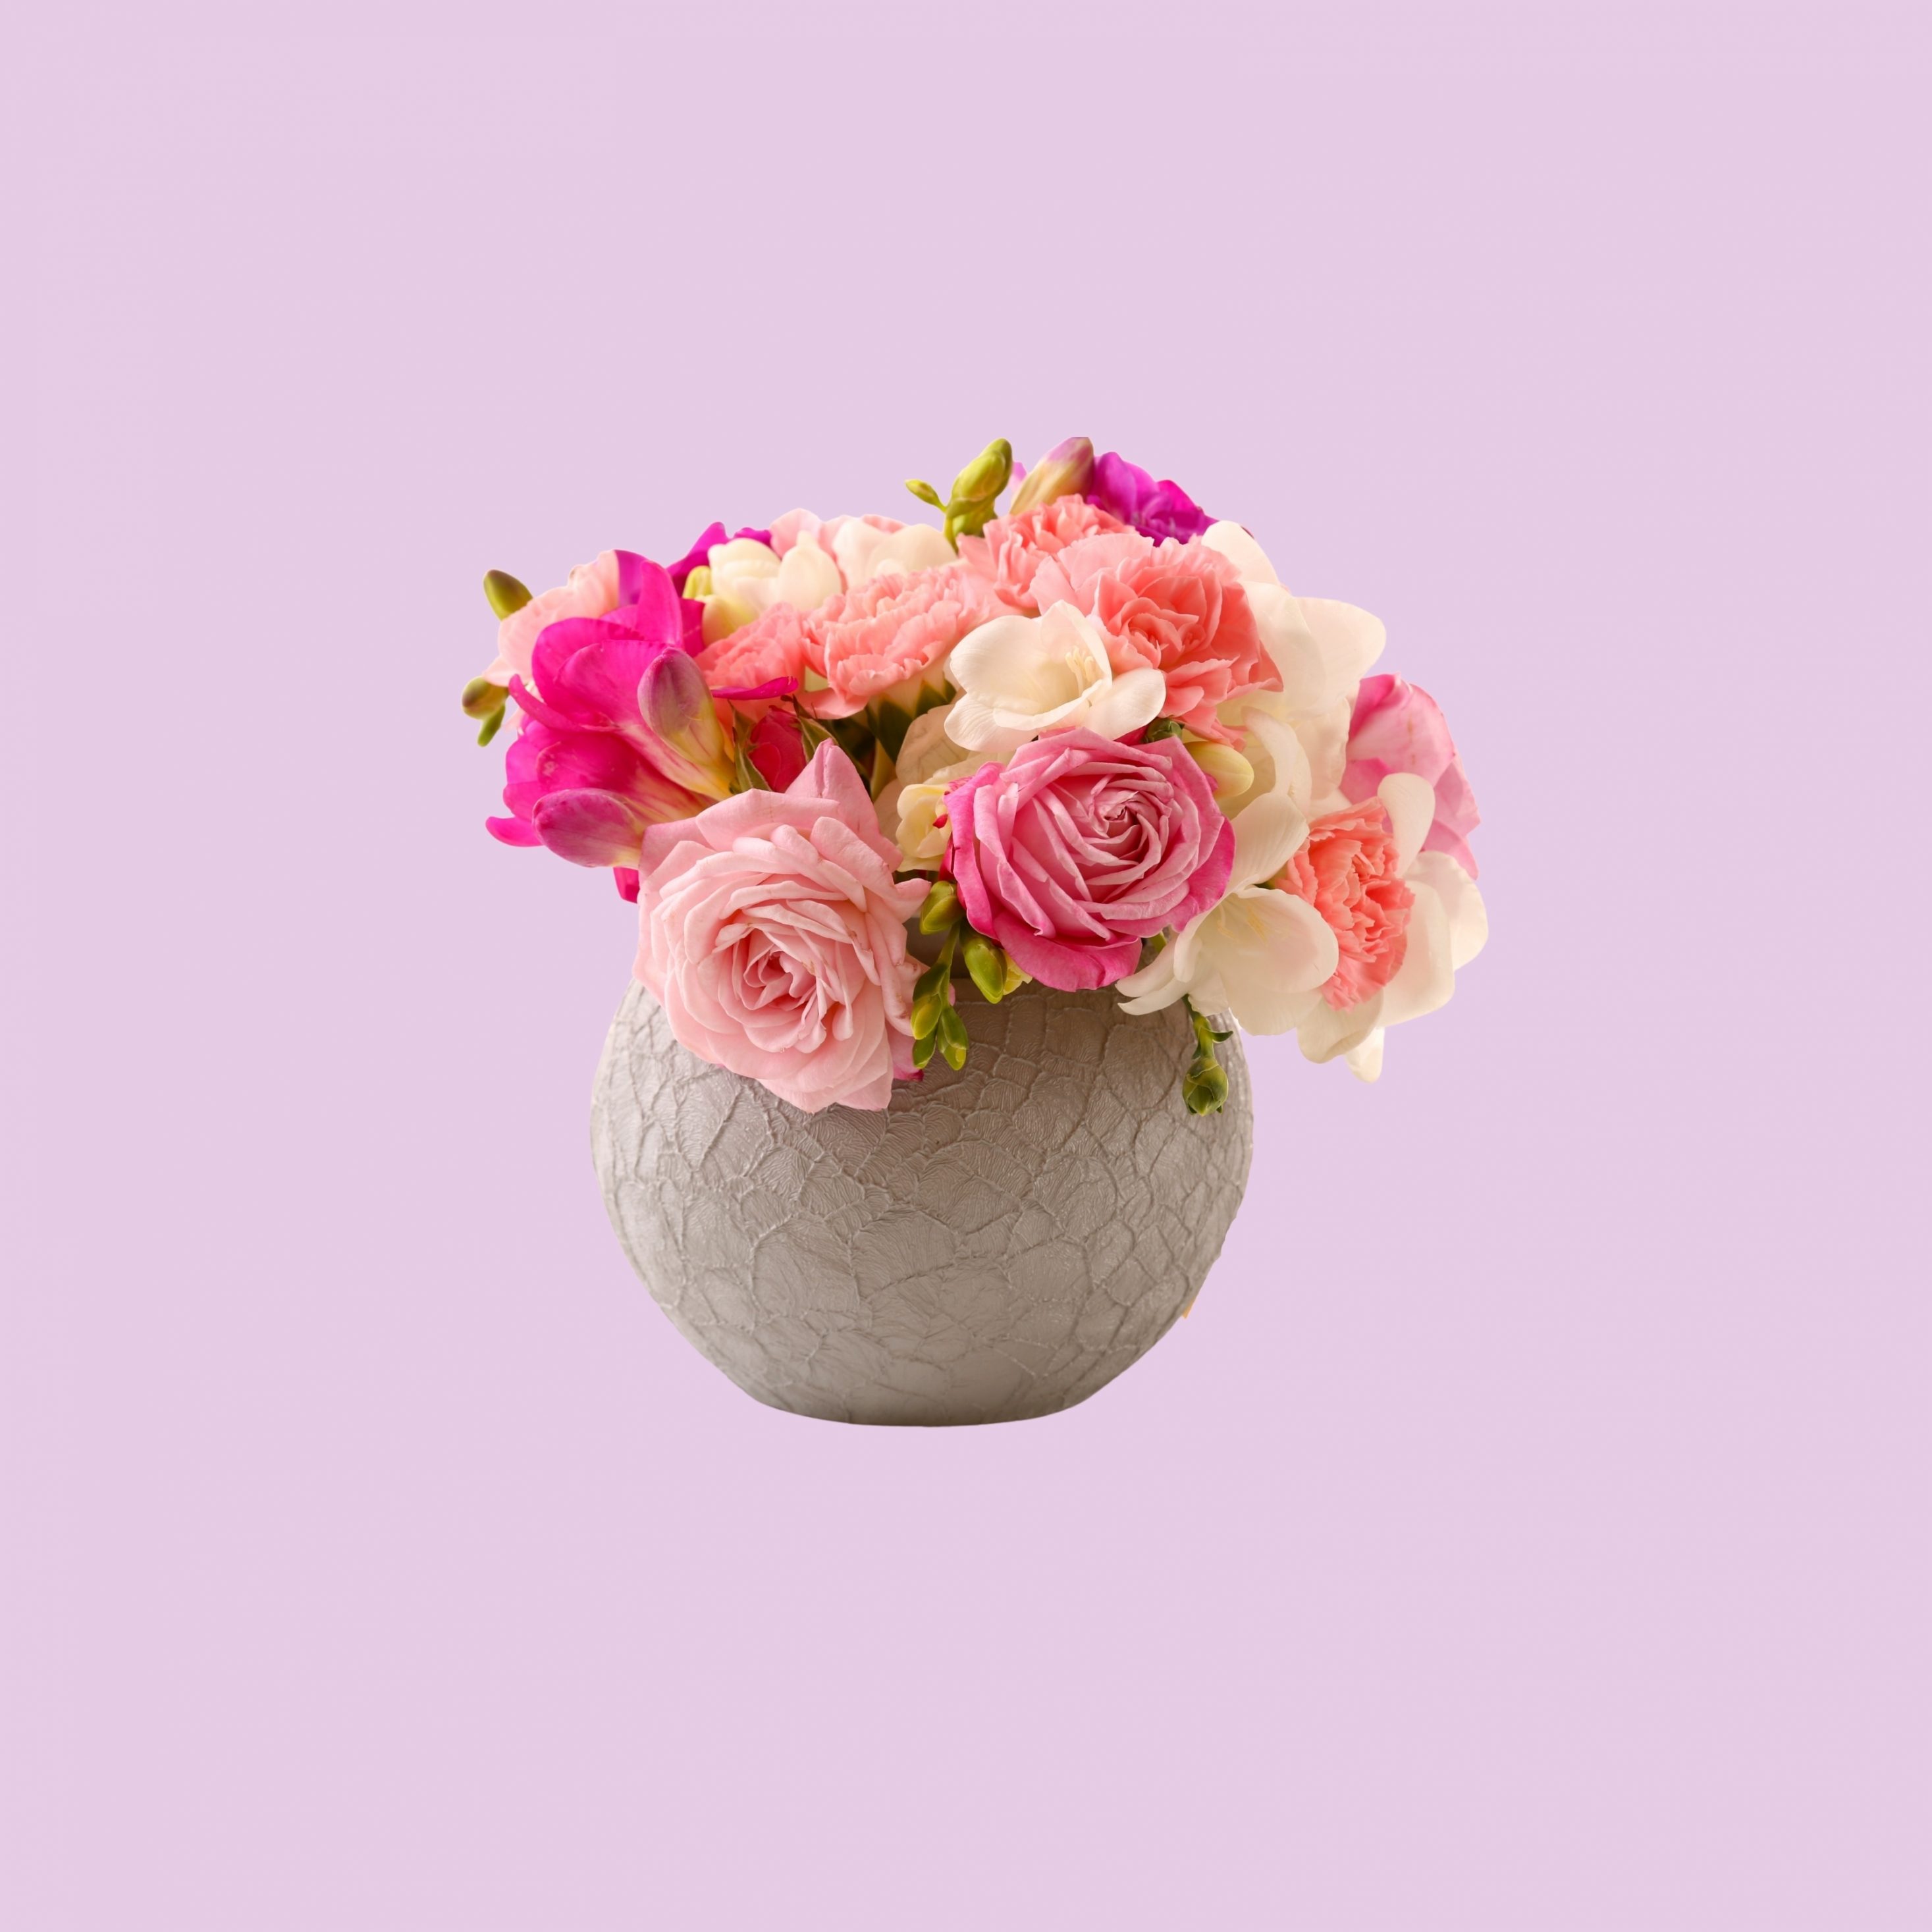 2934x2934 iOS iPad wallpaper 4k Vase Pink Roses Floral Pot iPad Wallpaper 2934x2934 pixels resolution